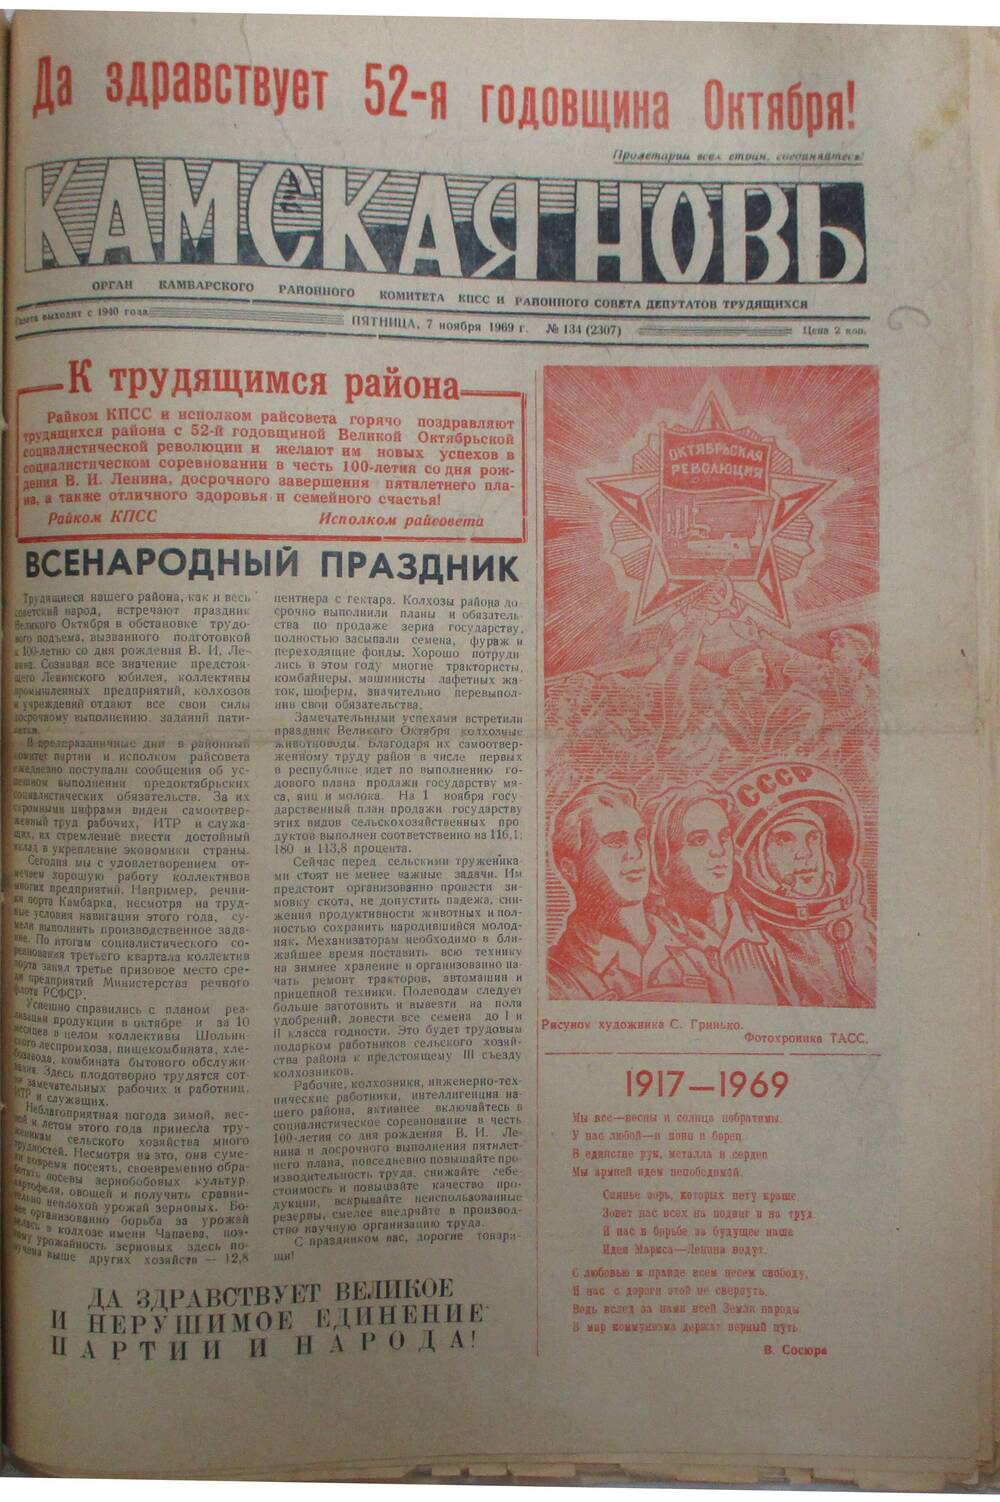 Газеты Камская новь за 1969 год, орган Камбарского райсовета и  РККПСС, с №1 по №66, с №68 по №156. №134.